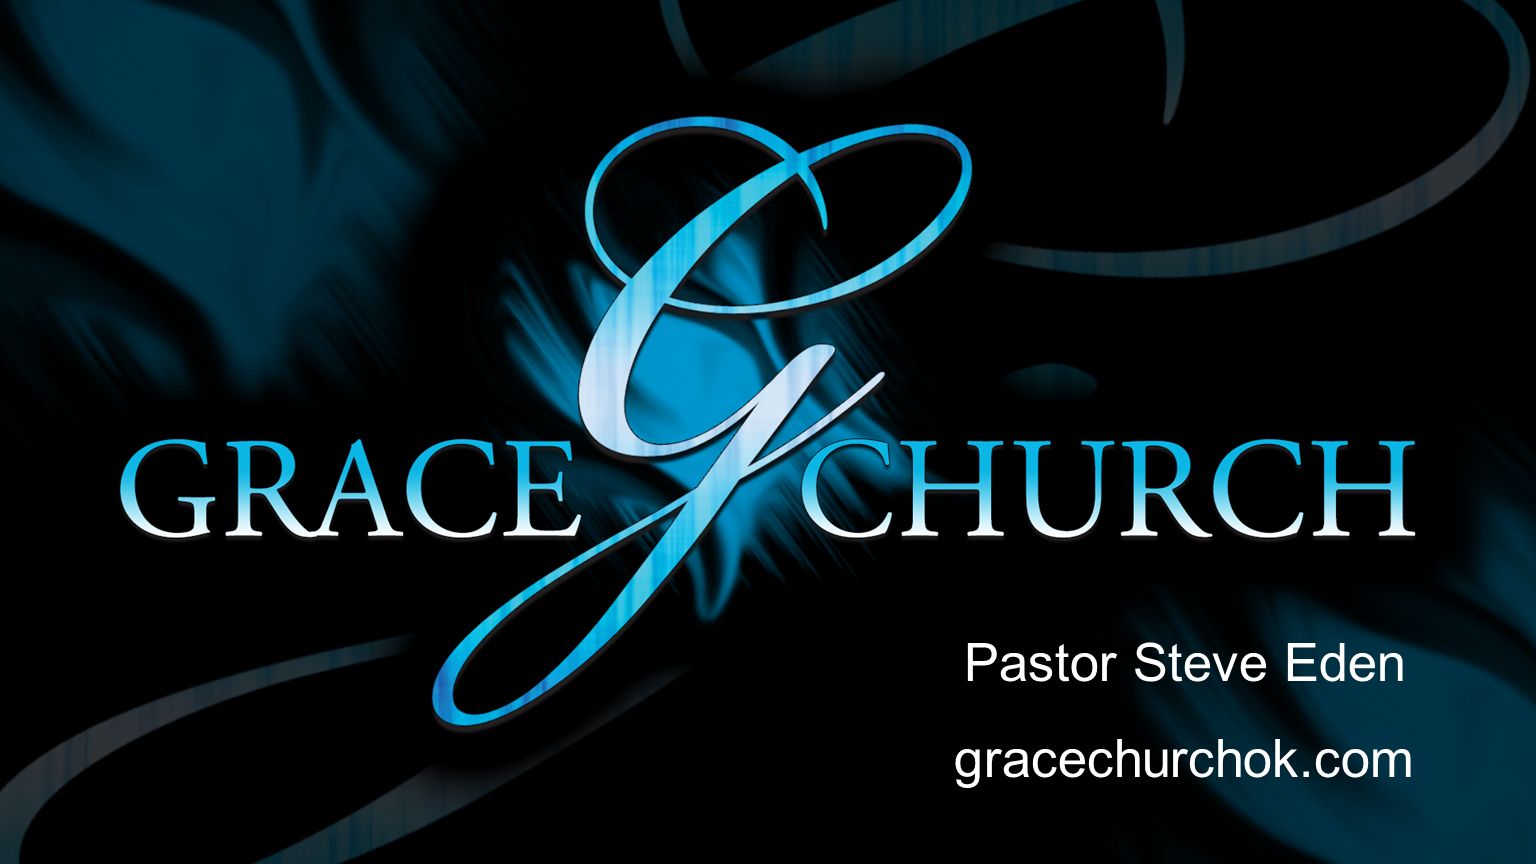 Pastor Steve Eden gracechurchok.com